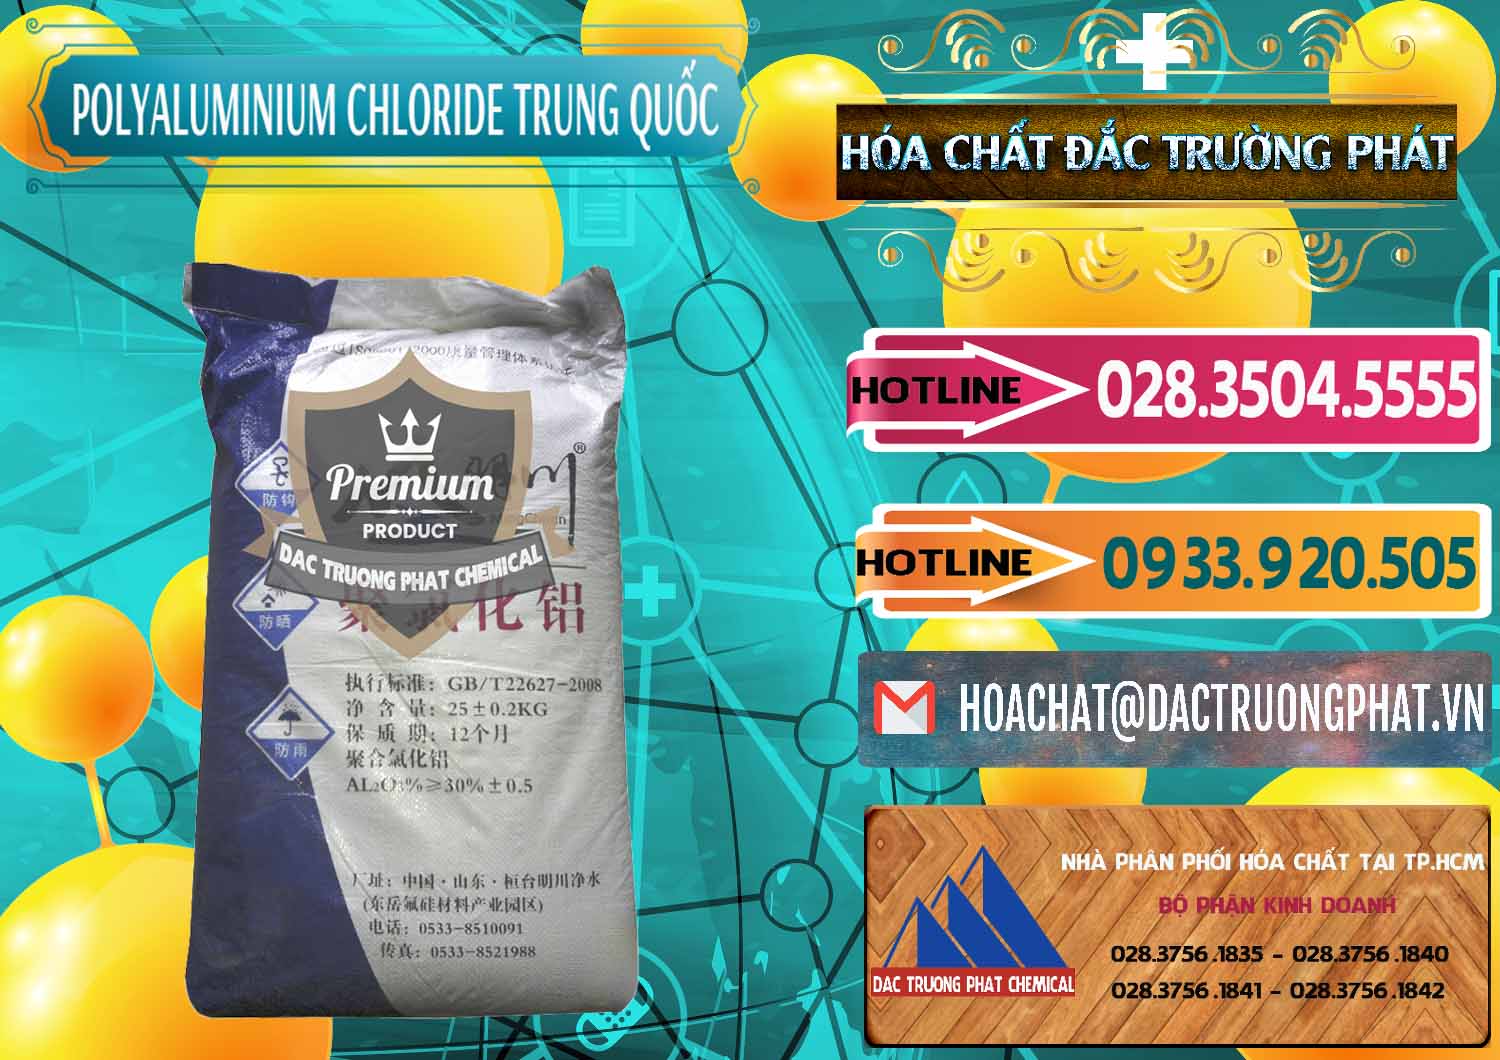 Nơi chuyên cung ứng và bán PAC - Polyaluminium Chloride Mingchuan Trung Quốc China - 0445 - Chuyên bán ( cung cấp ) hóa chất tại TP.HCM - dactruongphat.vn